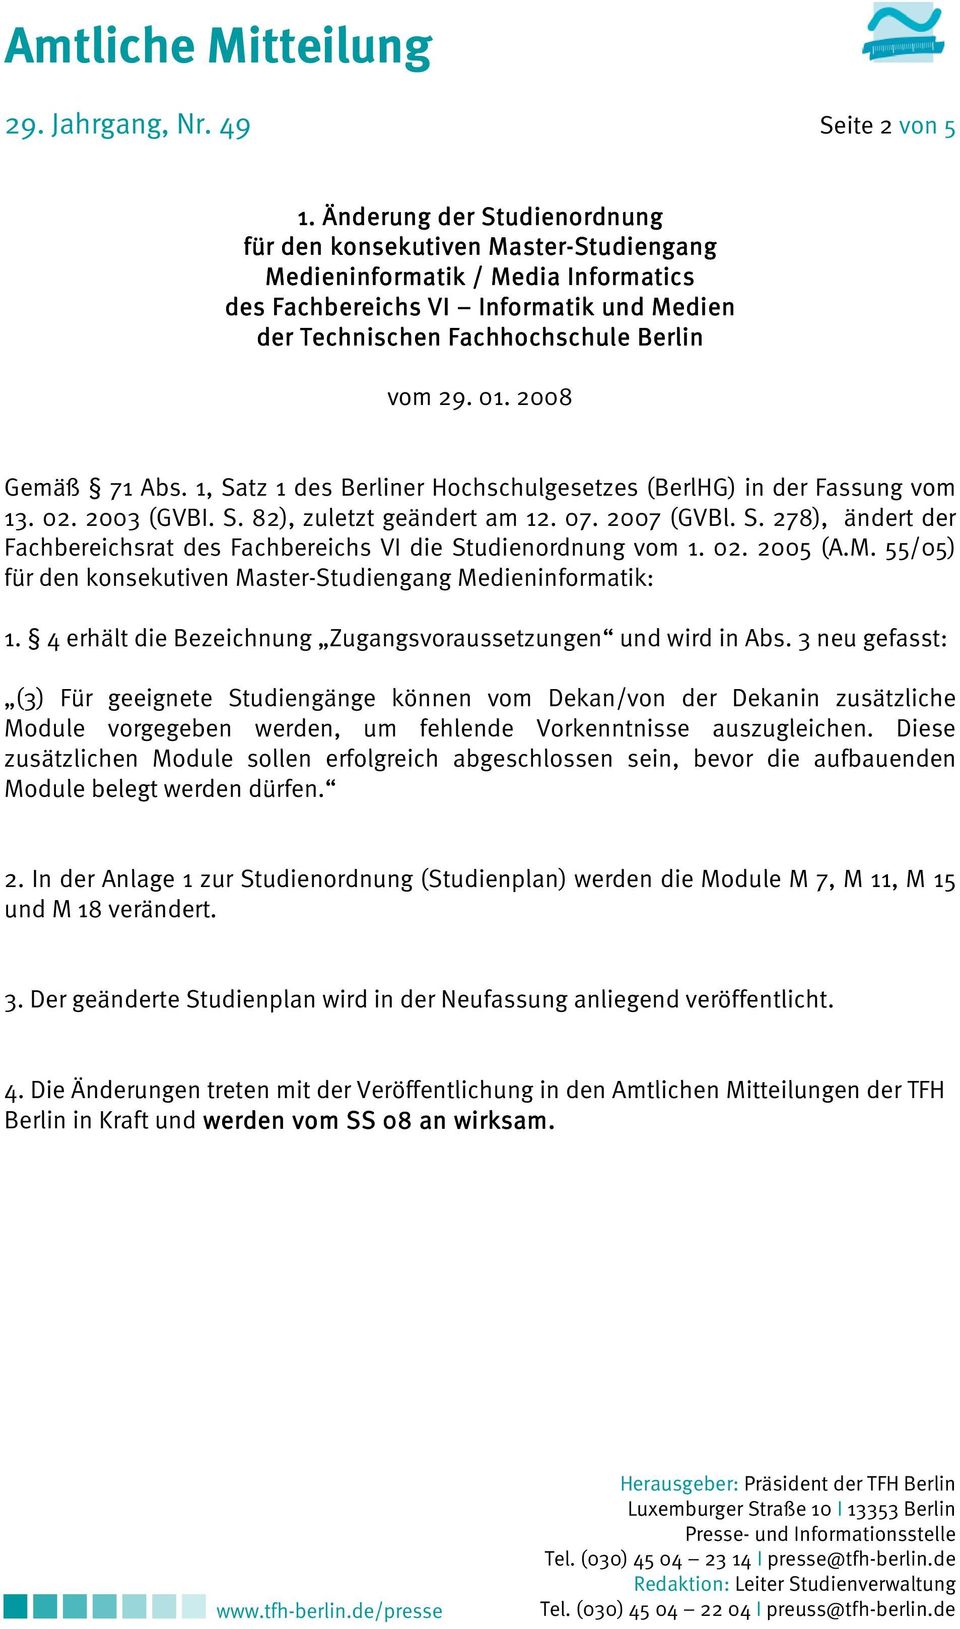 2008 Gemäß 71 Abs. 1, Satz 1 des Berliner Hochschulgesetzes (BerlHG) in der Fassung vom 13. 02. 2003 (GVBI. S. 82), zuletzt geändert am 12. 07. 2007 (GVBl. S. 278), ändert der Fachbereichsrat des Fachbereichs VI die Studienordnung vom 1.